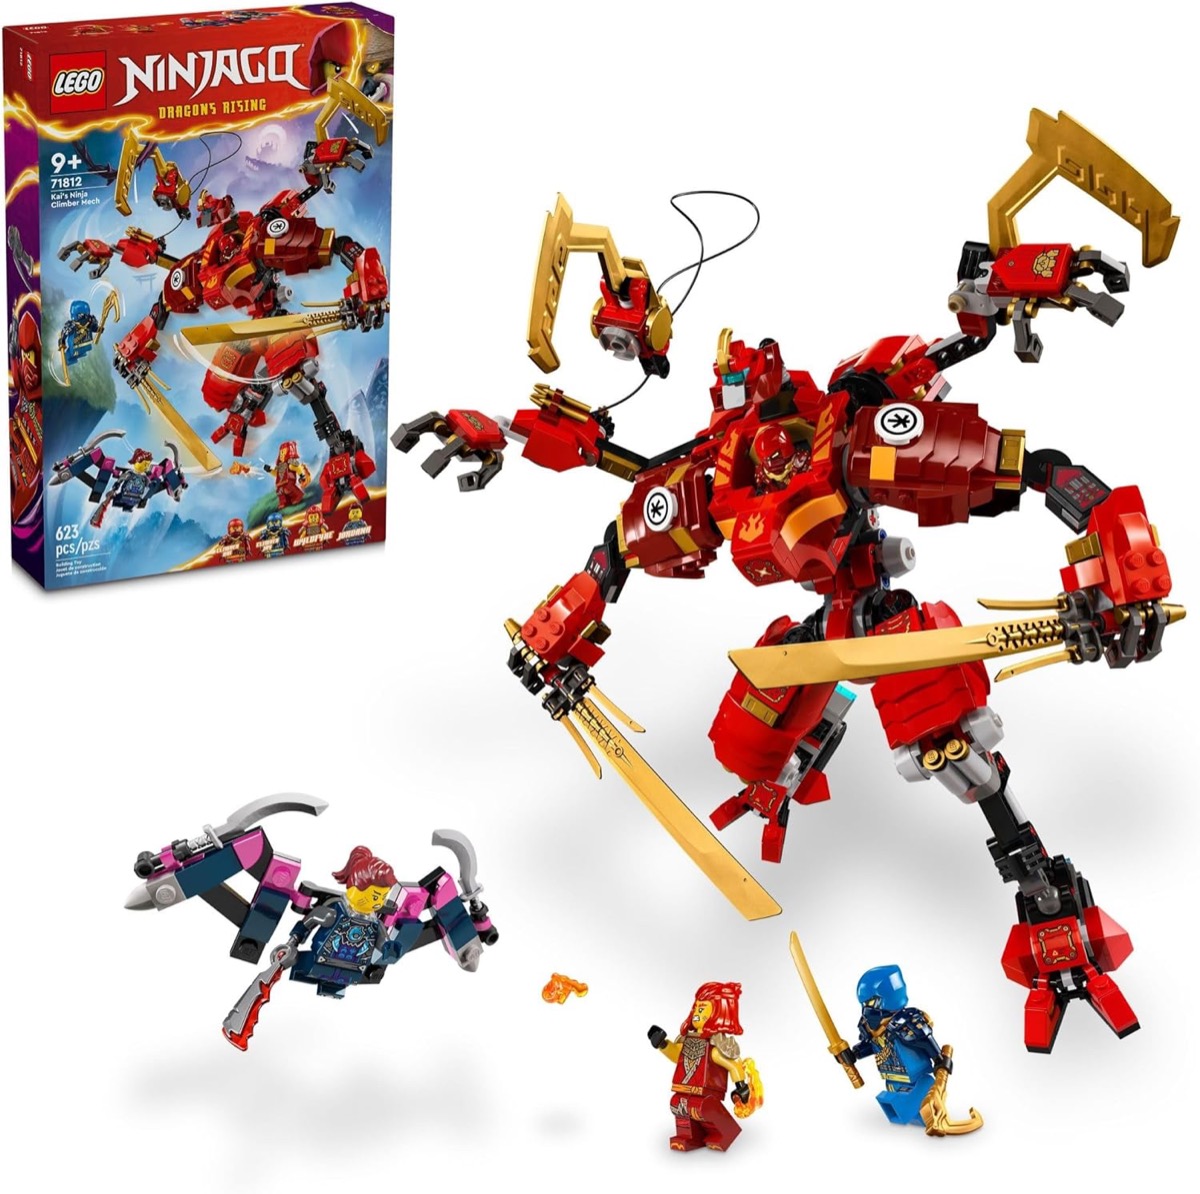 LEGO model of Kai’s Ninja Climber from "Ninjago"